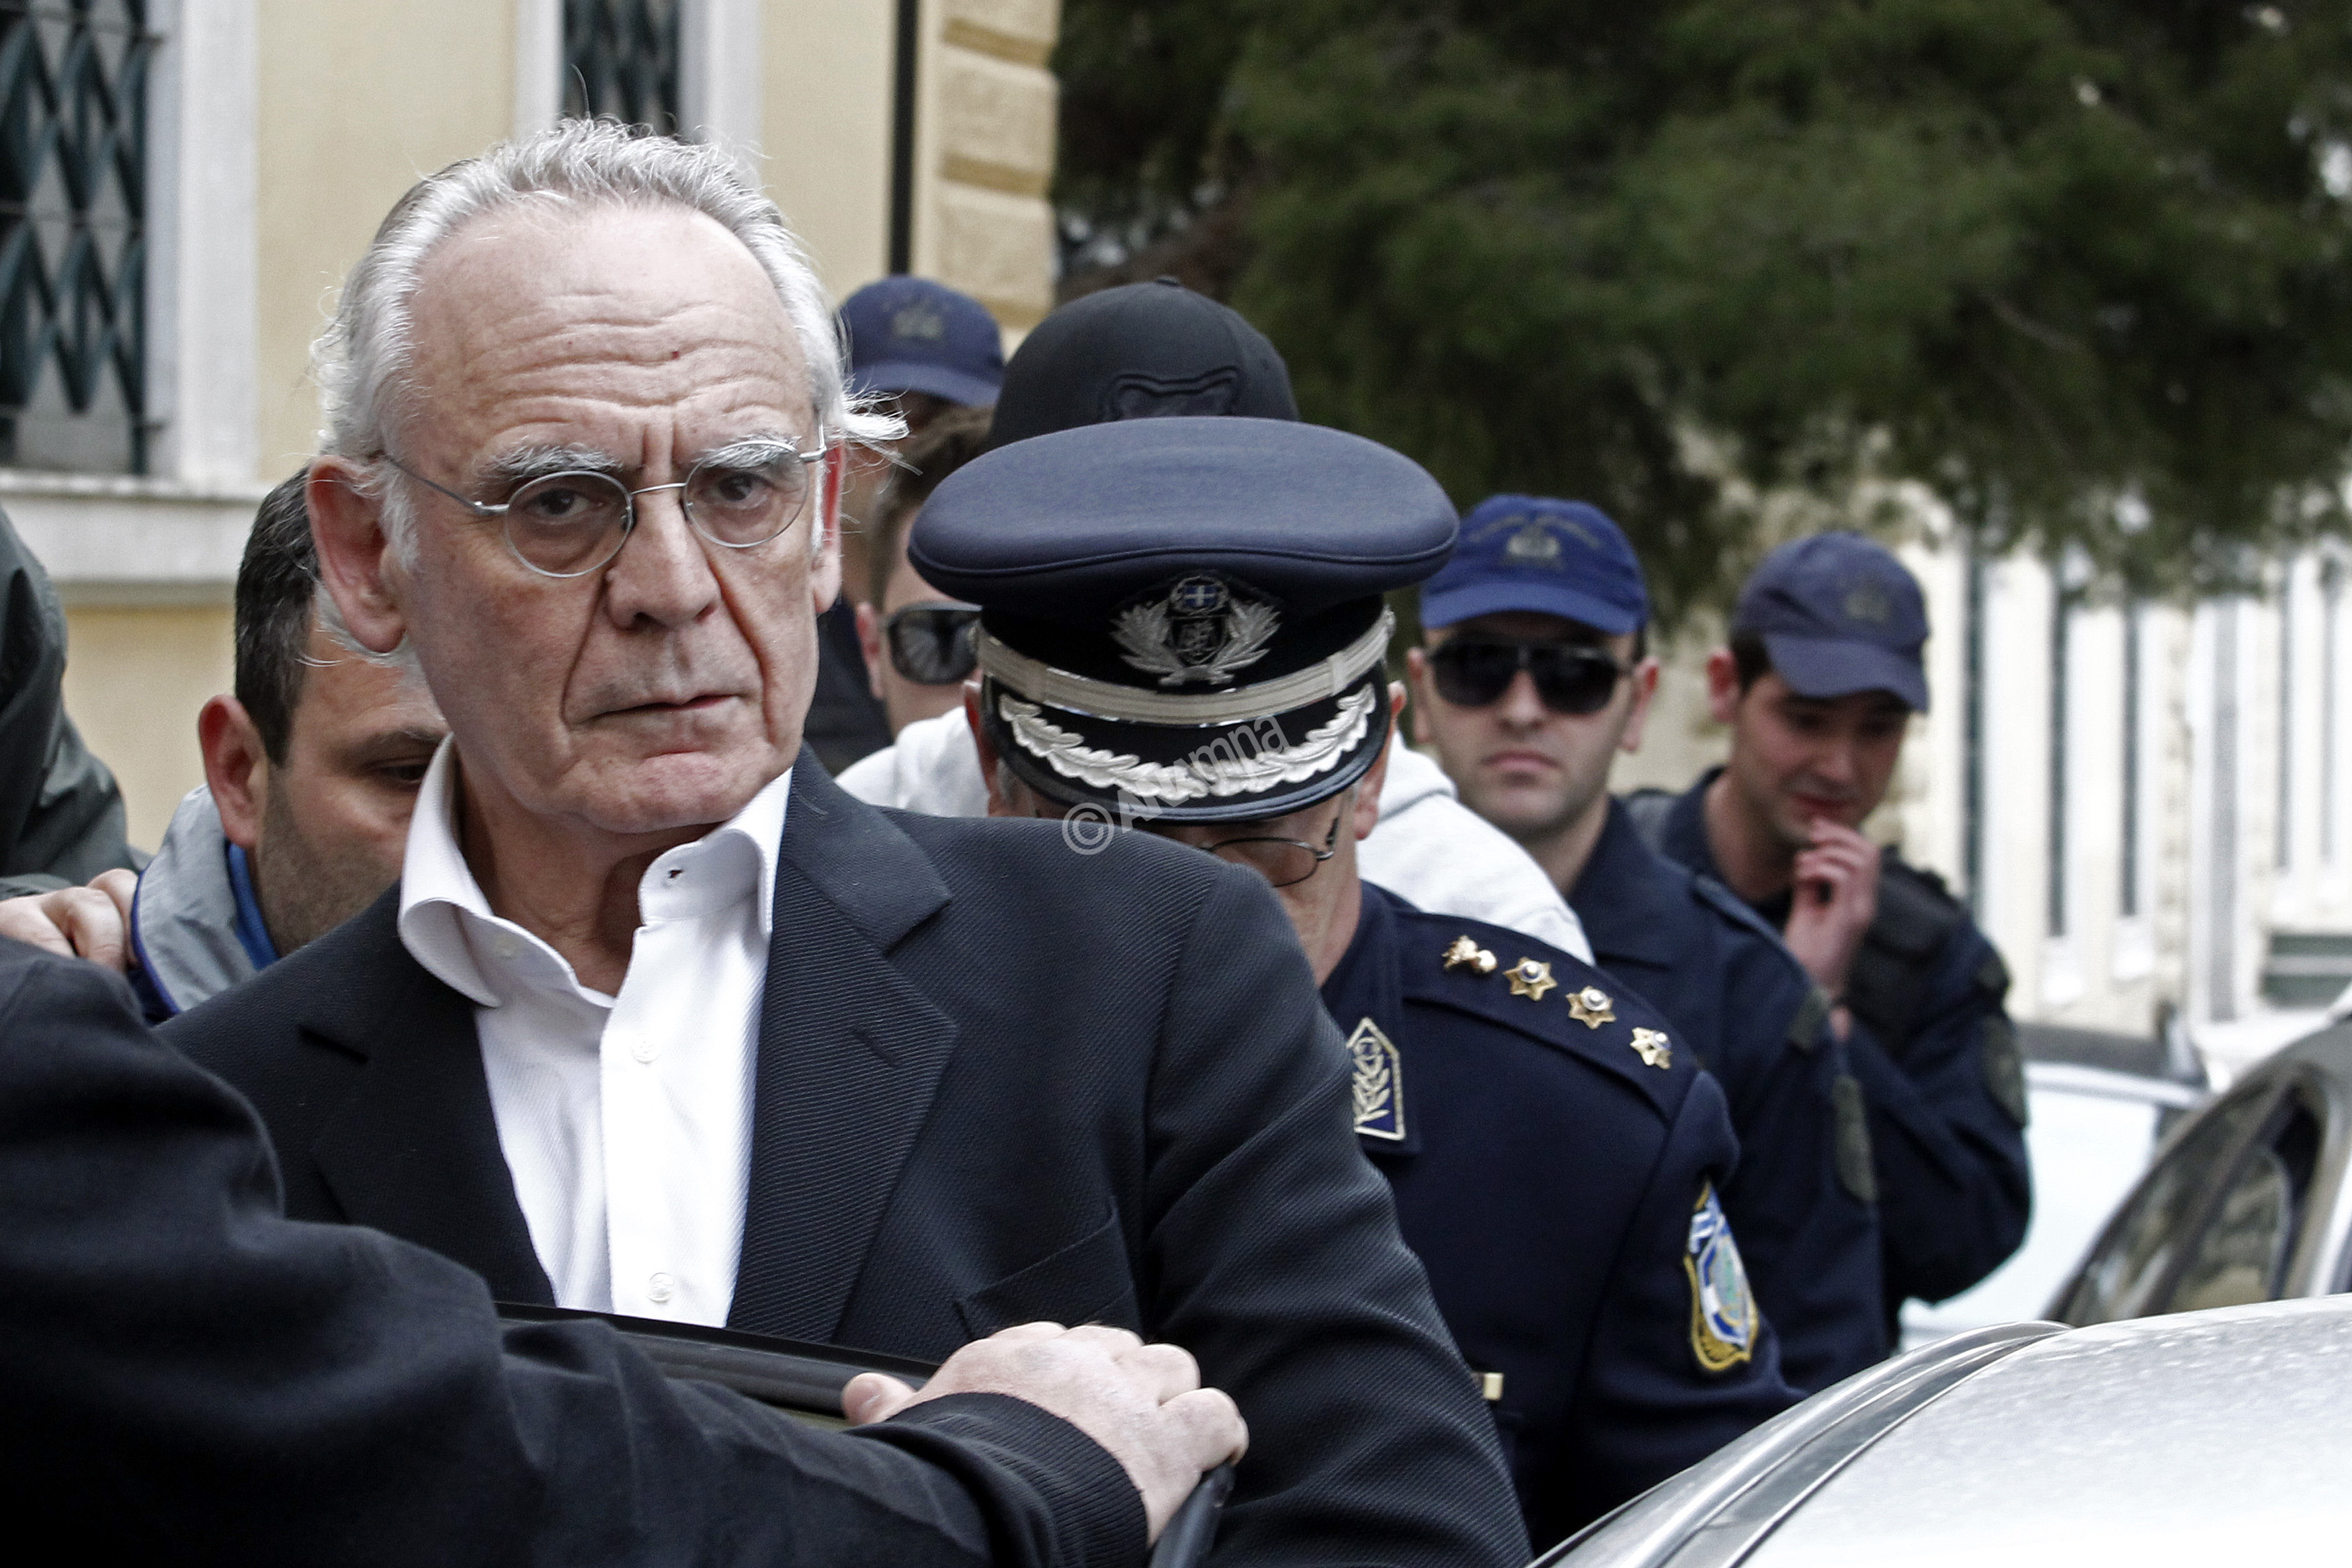 Ο πρώην υπουργός Άκης Τσοχατζόπουλος αποχωρεί από τα δικαστήρια της Ευελπίδων μετά την απολογία στον ειδικό ανακριτή, στην Αθήνα, Δευτέρα 16 Απριλίου 2012. Ο πρώην υπουργός Ακης Τσοχατζόπουλος κρίθηκε προφυλακιστέος κρίθηκε μετά την πολύωρη απολογία του ενώπιον του ανακριτη, κατηγορούμενος για νομιμοποίηση εσόδων από παράνομες αμοιβές, που φέρεται να έλαβε για τις προμήθειες των συστημάτων TOR-M1 και υποβρυχίων. ΑΠΕ-ΜΠΕ/ΑΠΕ-ΜΠΕ/ΑΛΚΗΣ ΚΩΝΣΤΑΝΤΙΝΙΔΗΣ